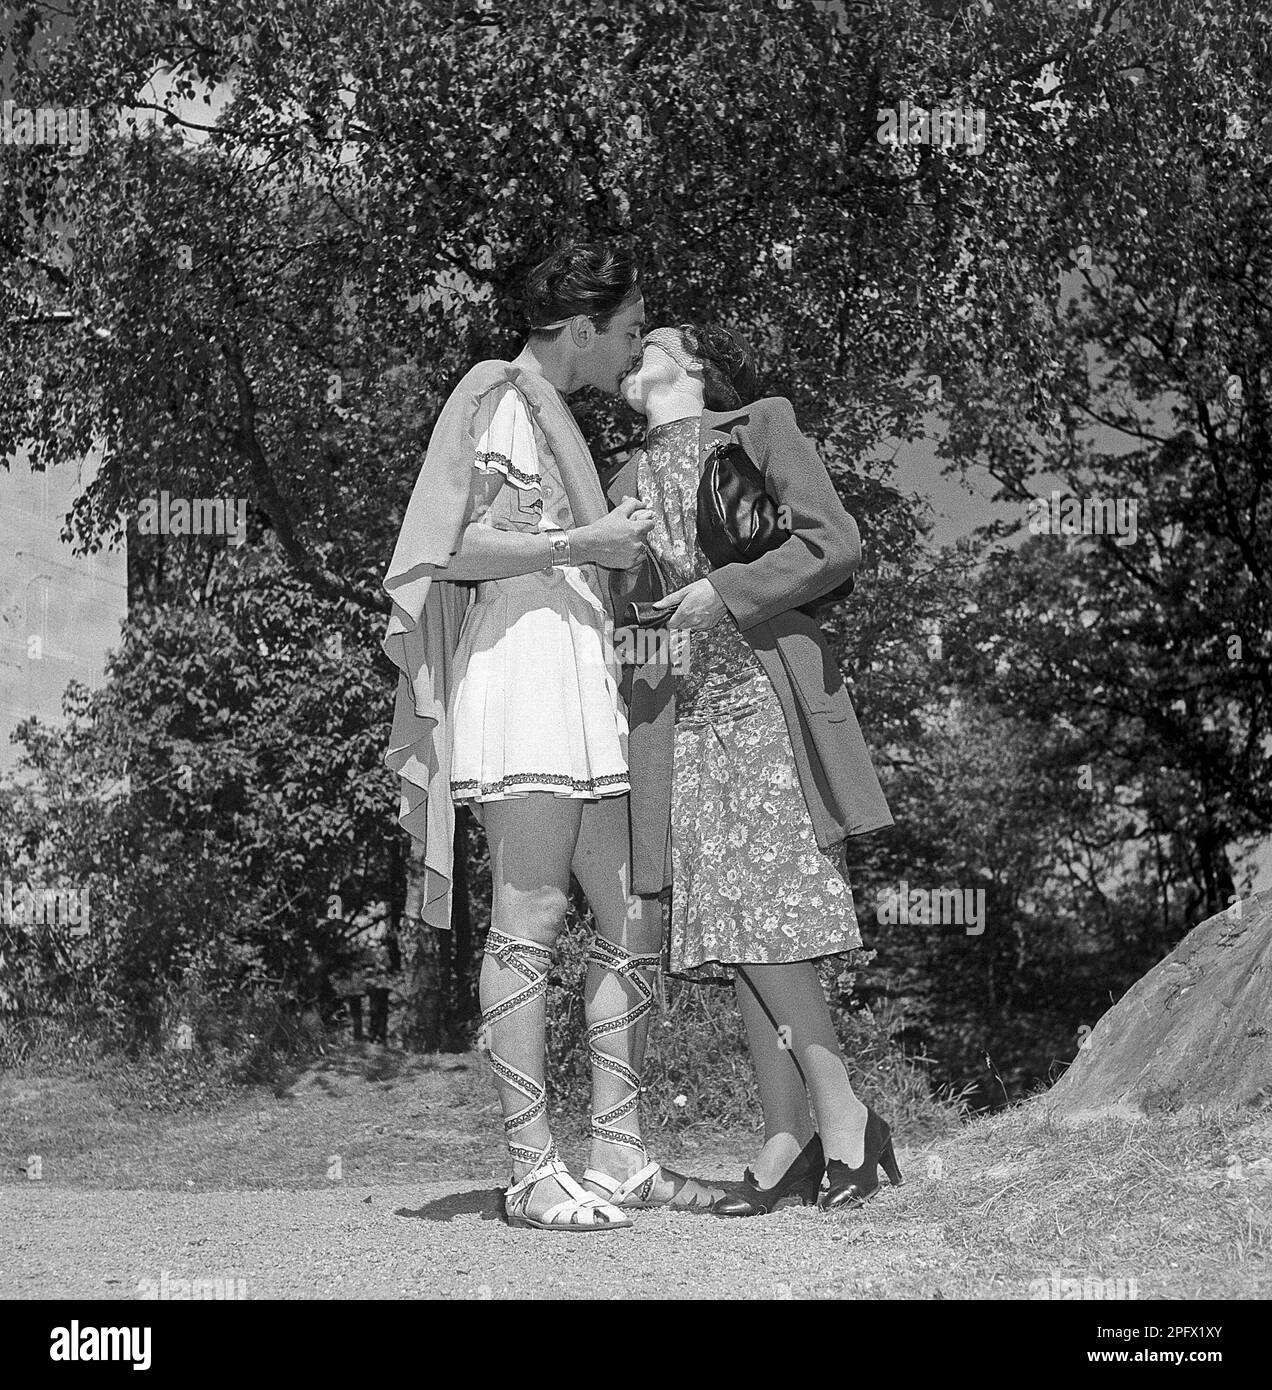 Historische Romantik. Ein junges Paar, das sich küsst. Er trug sein römisches Theaterkostüm und sie trug ihre typischen 1940er Kleider, ein Kleid und einen Mantel. Vielleicht ein Glückskuss, bevor er auf die Bühne geht. Wer weiß. Schweden 1946 Kristoffersson Ref U106-4 Stockfoto